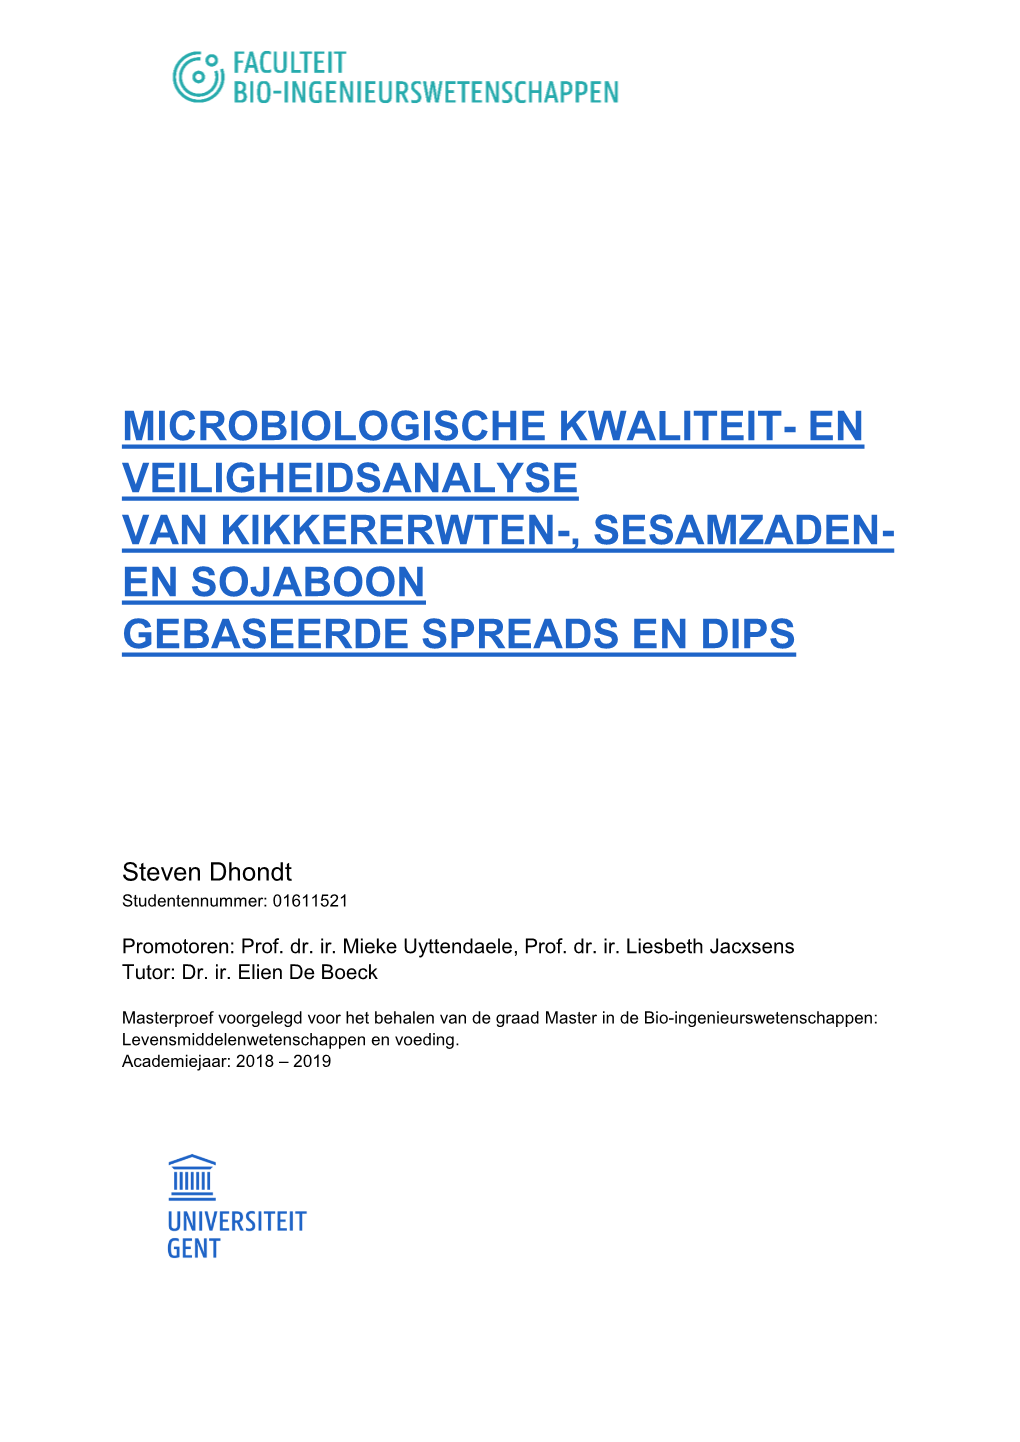 Microbiologische Kwaliteit- En Veiligheidsanalyse Van Kikkererwten-, Sesamzaden- En Sojaboon Gebaseerde Spreads En Dips